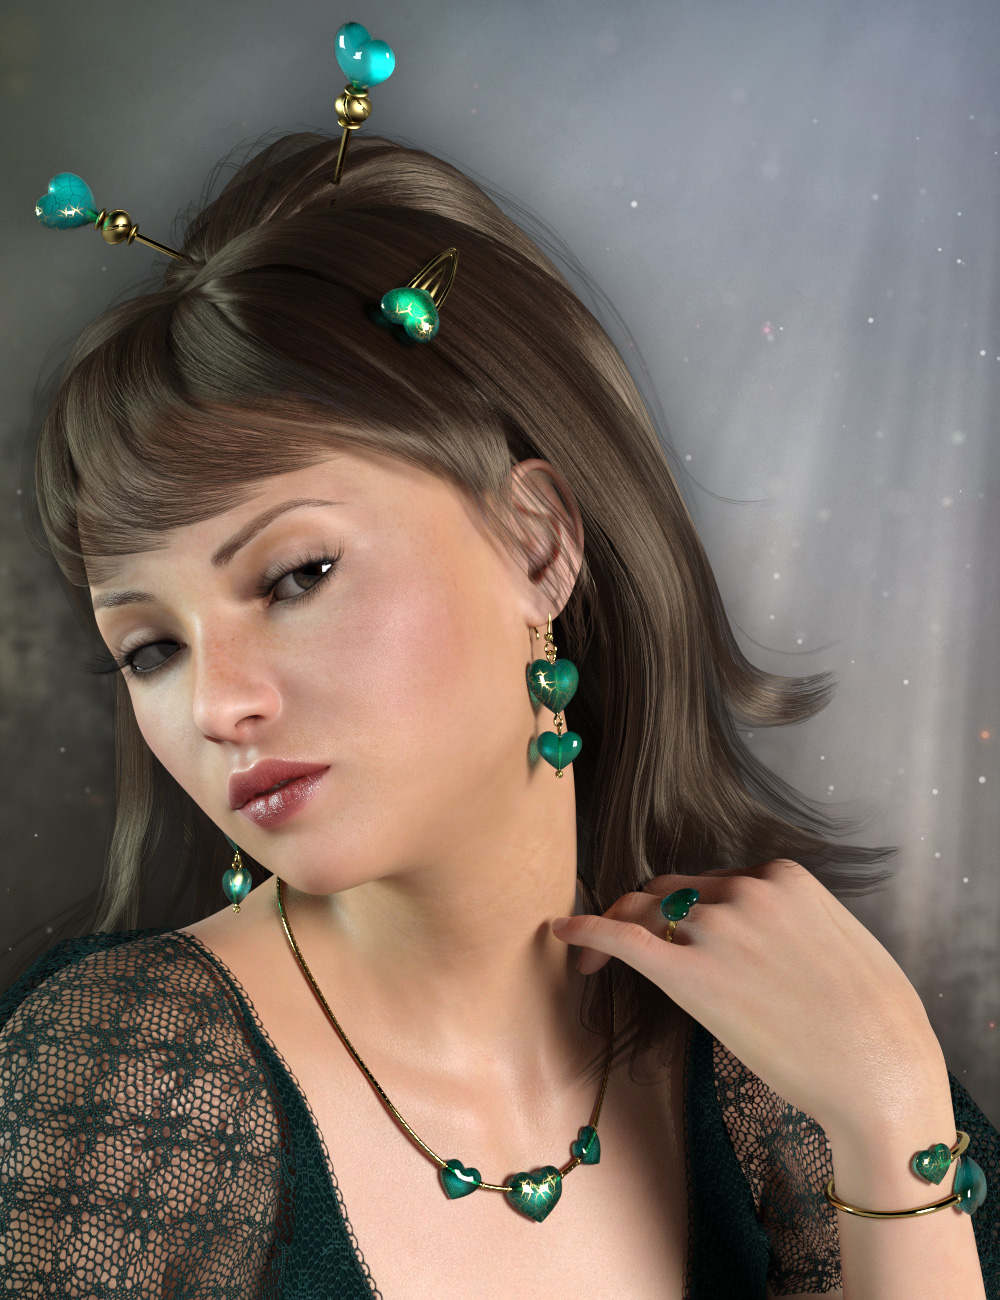 Little Heart Jewelry for Genesis 8 Female(s) by: esha, 3D Models by Daz 3D